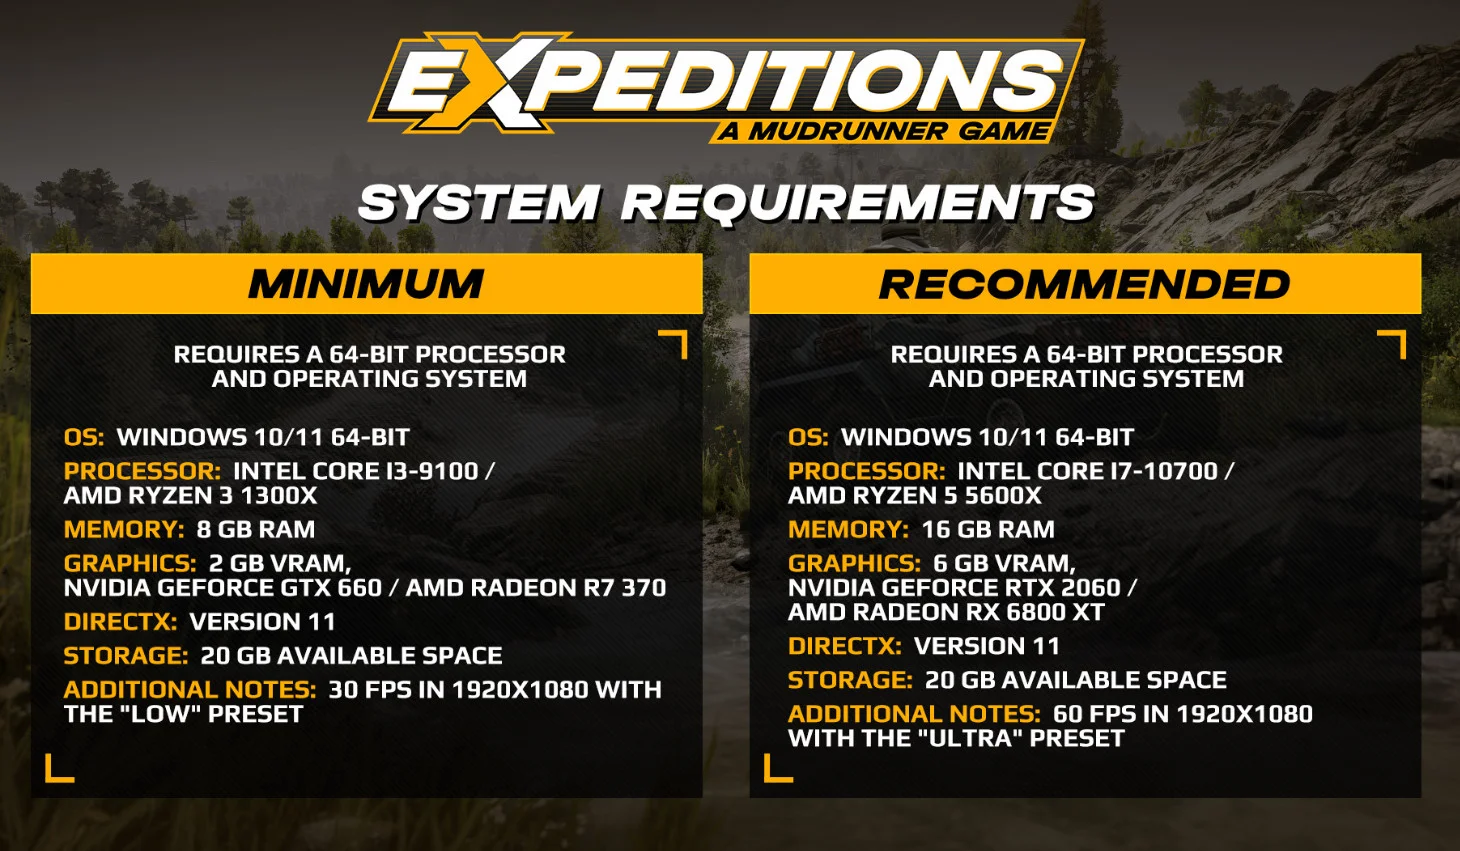 Expeditions A MudRunner Game получила трейлер разных изданий и пропуска с сезонами - фото 1